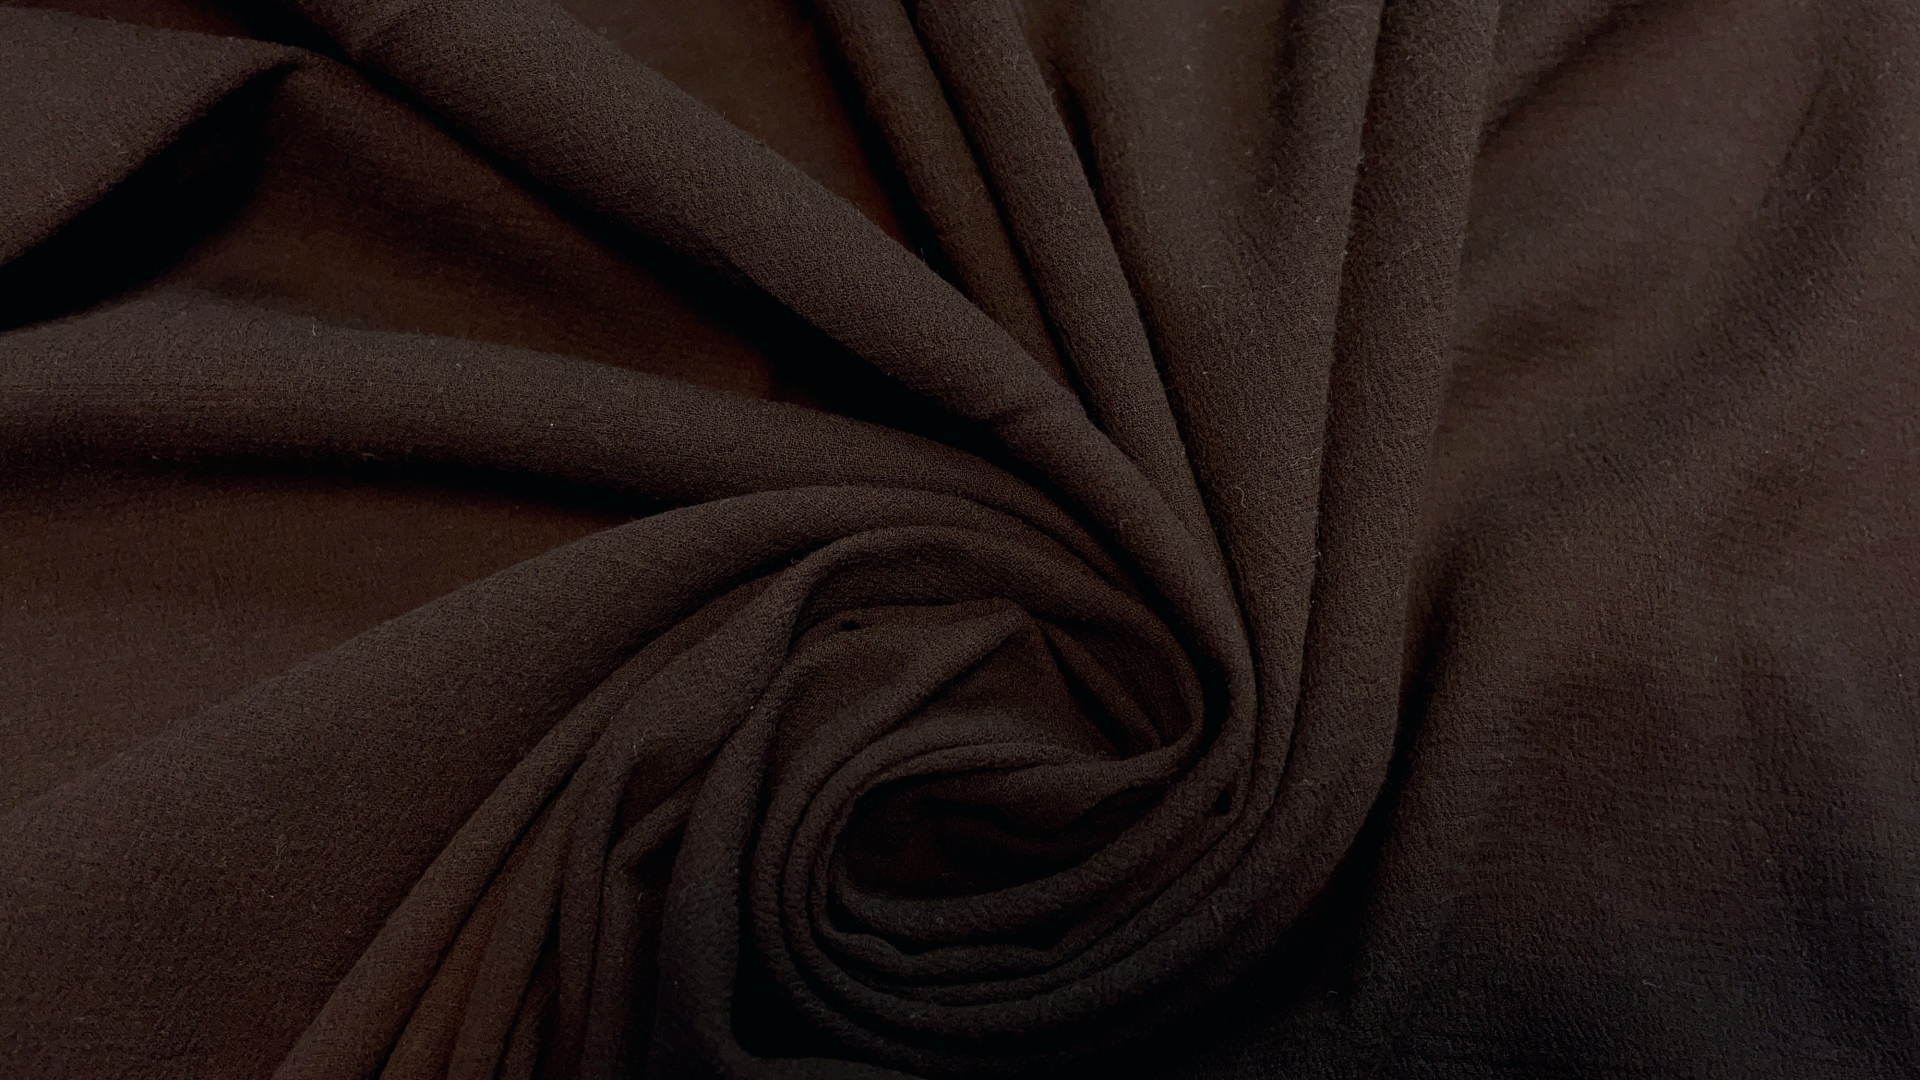 Марлевка темно-шоколадного цвета с легким крэшированным эффектом. Перед пошивом требует обязательной декатировки. Отлично смотрится в изделиях бохо-стиля.